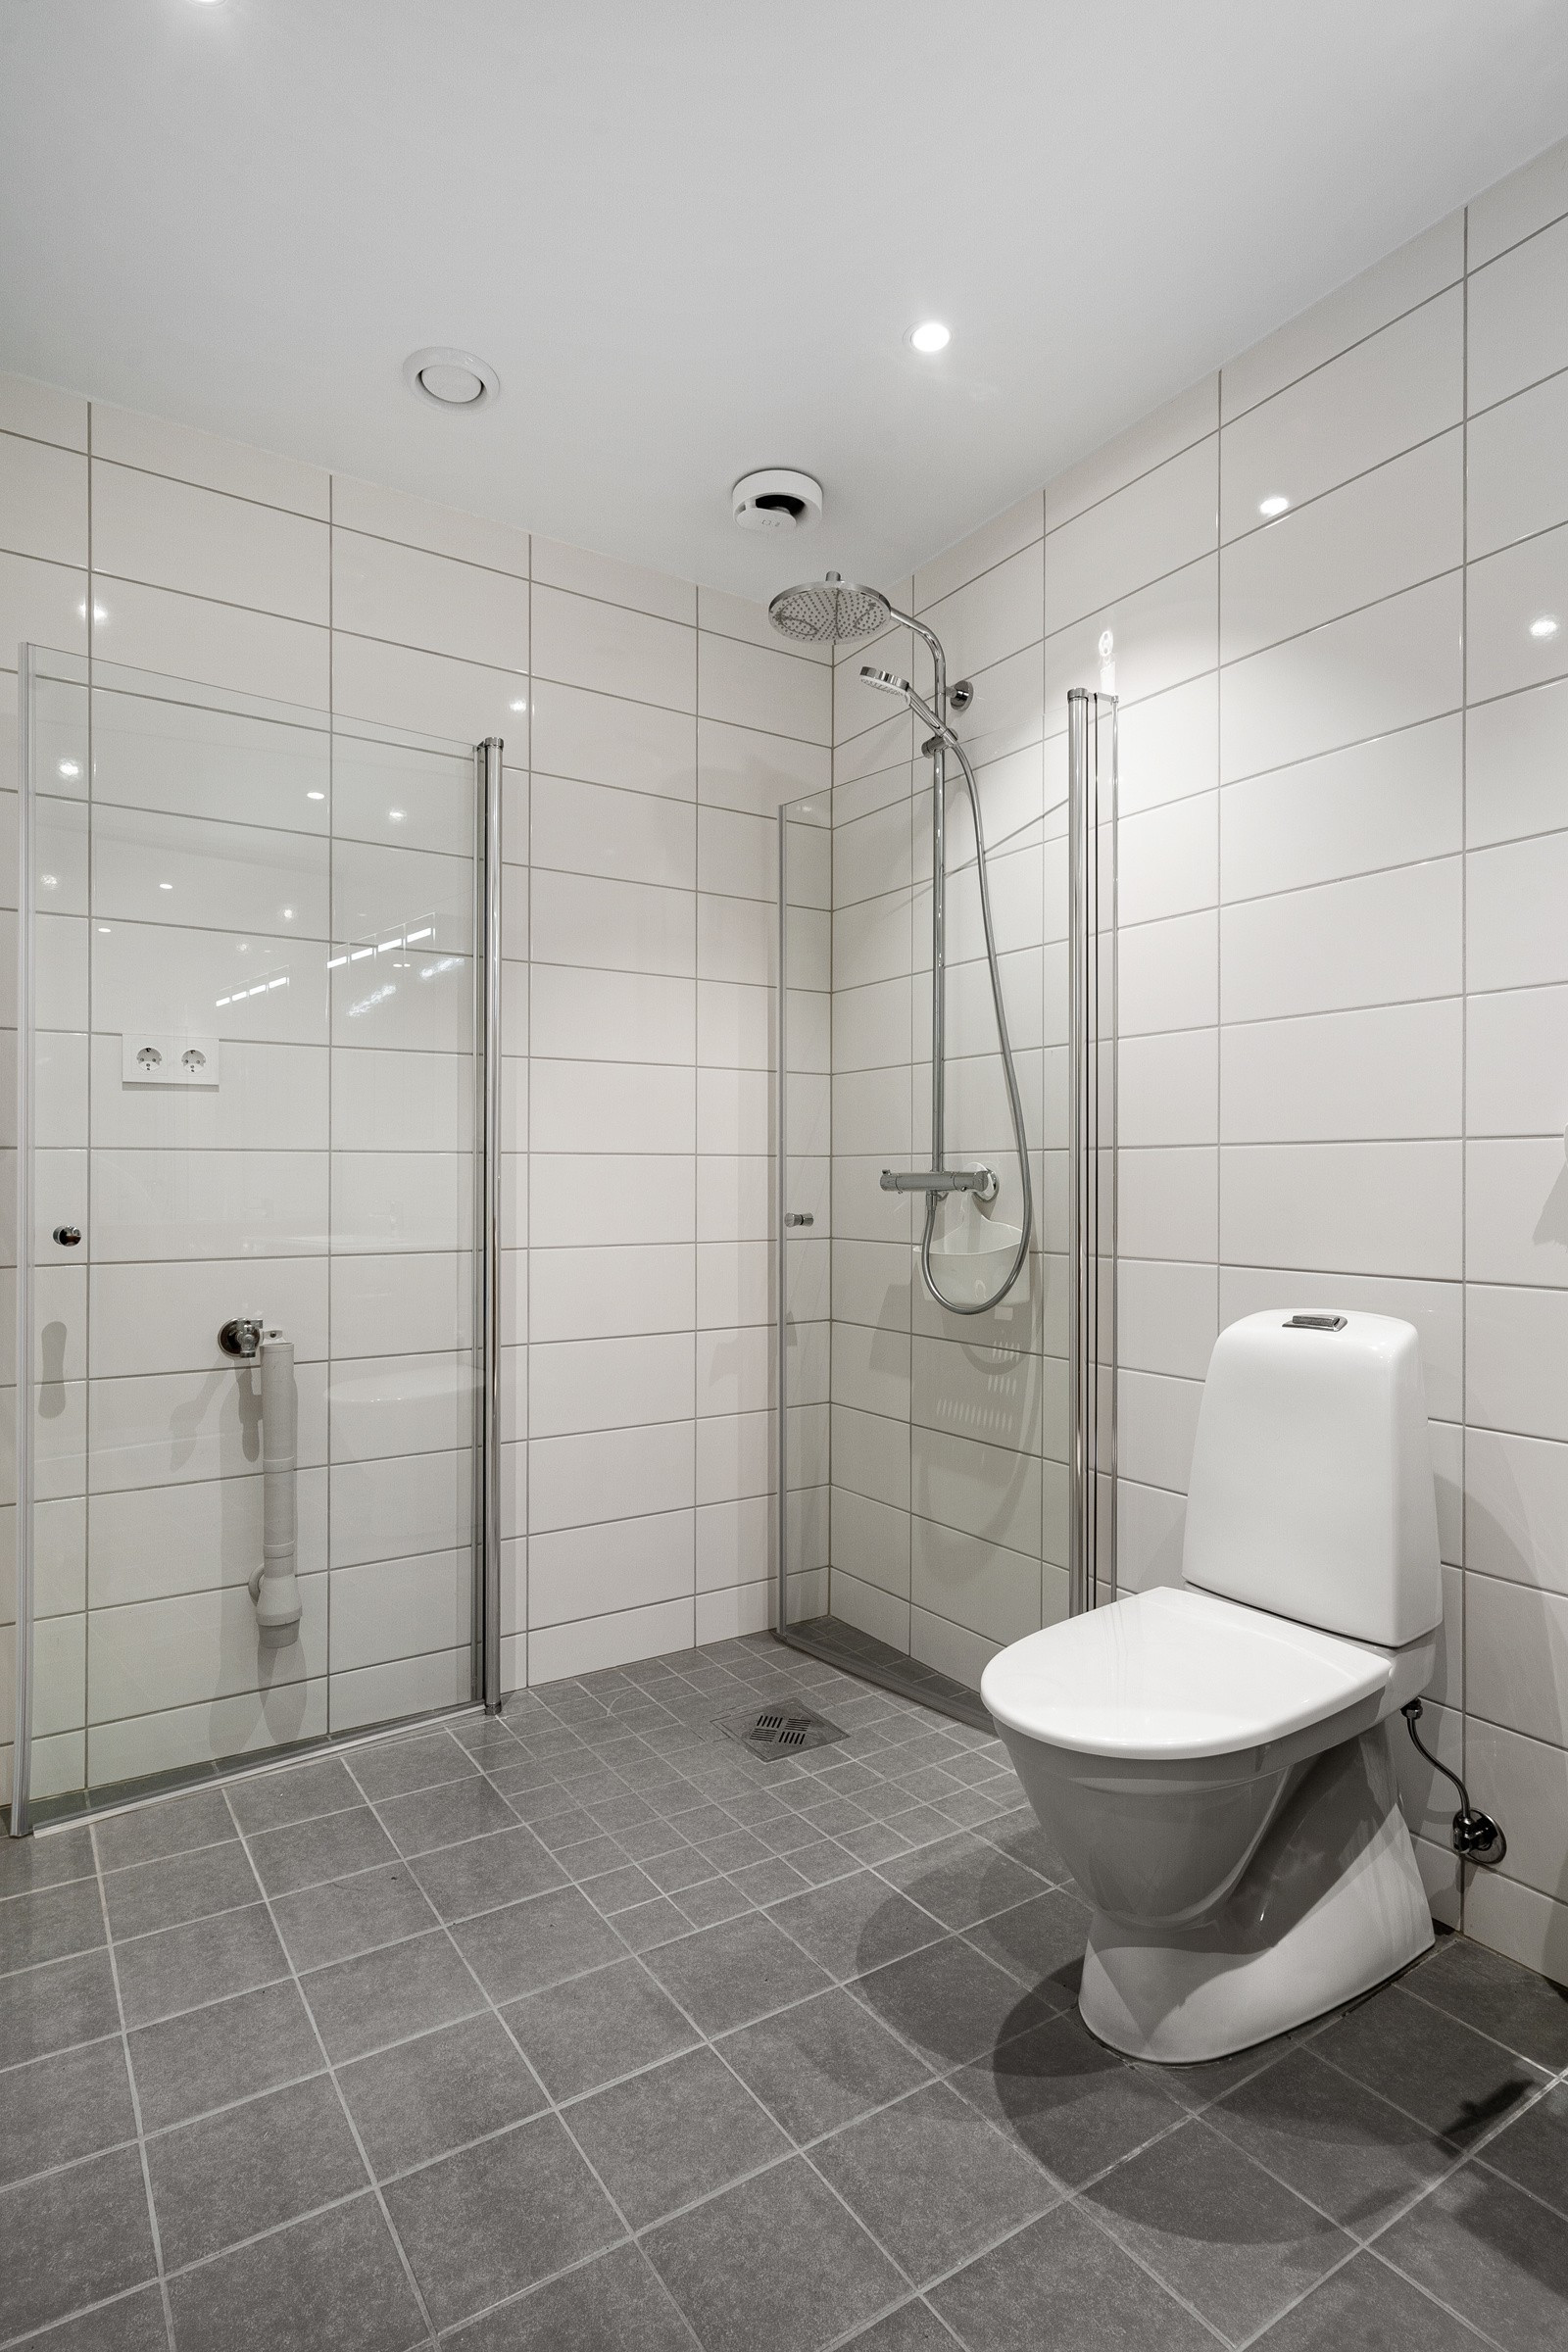 Badet fremstår lyst og stilrent, med opplegg for vask/trommel ved siden av dusjhjørnet.